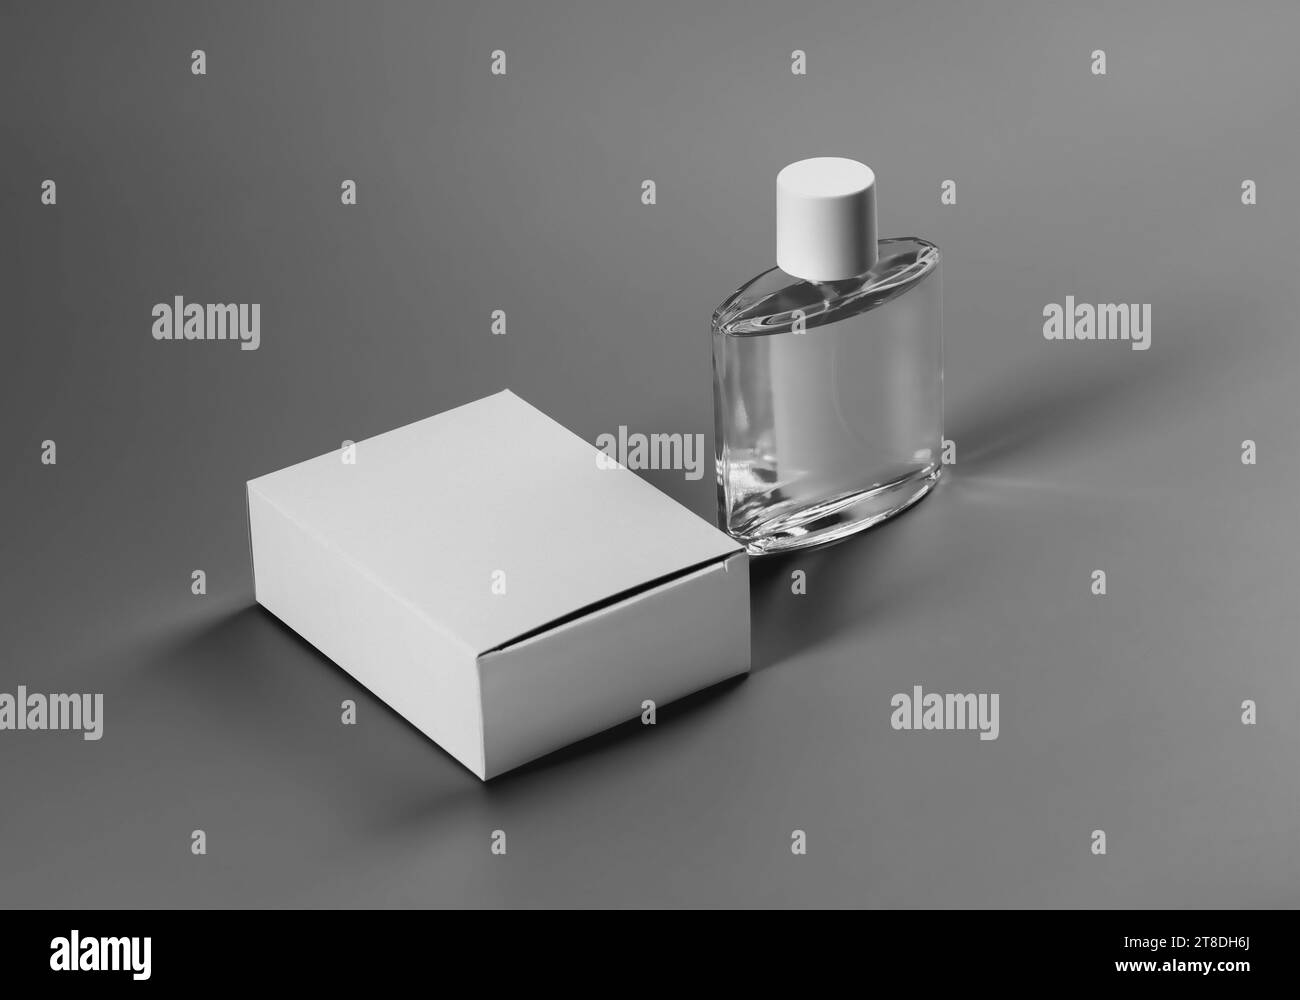 Modello di una scatola bianca chiusa e una bottiglia di profumo trasparente, etichetta per design, branding, stampa. Modello di confezione per fragranze di alta qualità. Prodotto Foto Stock